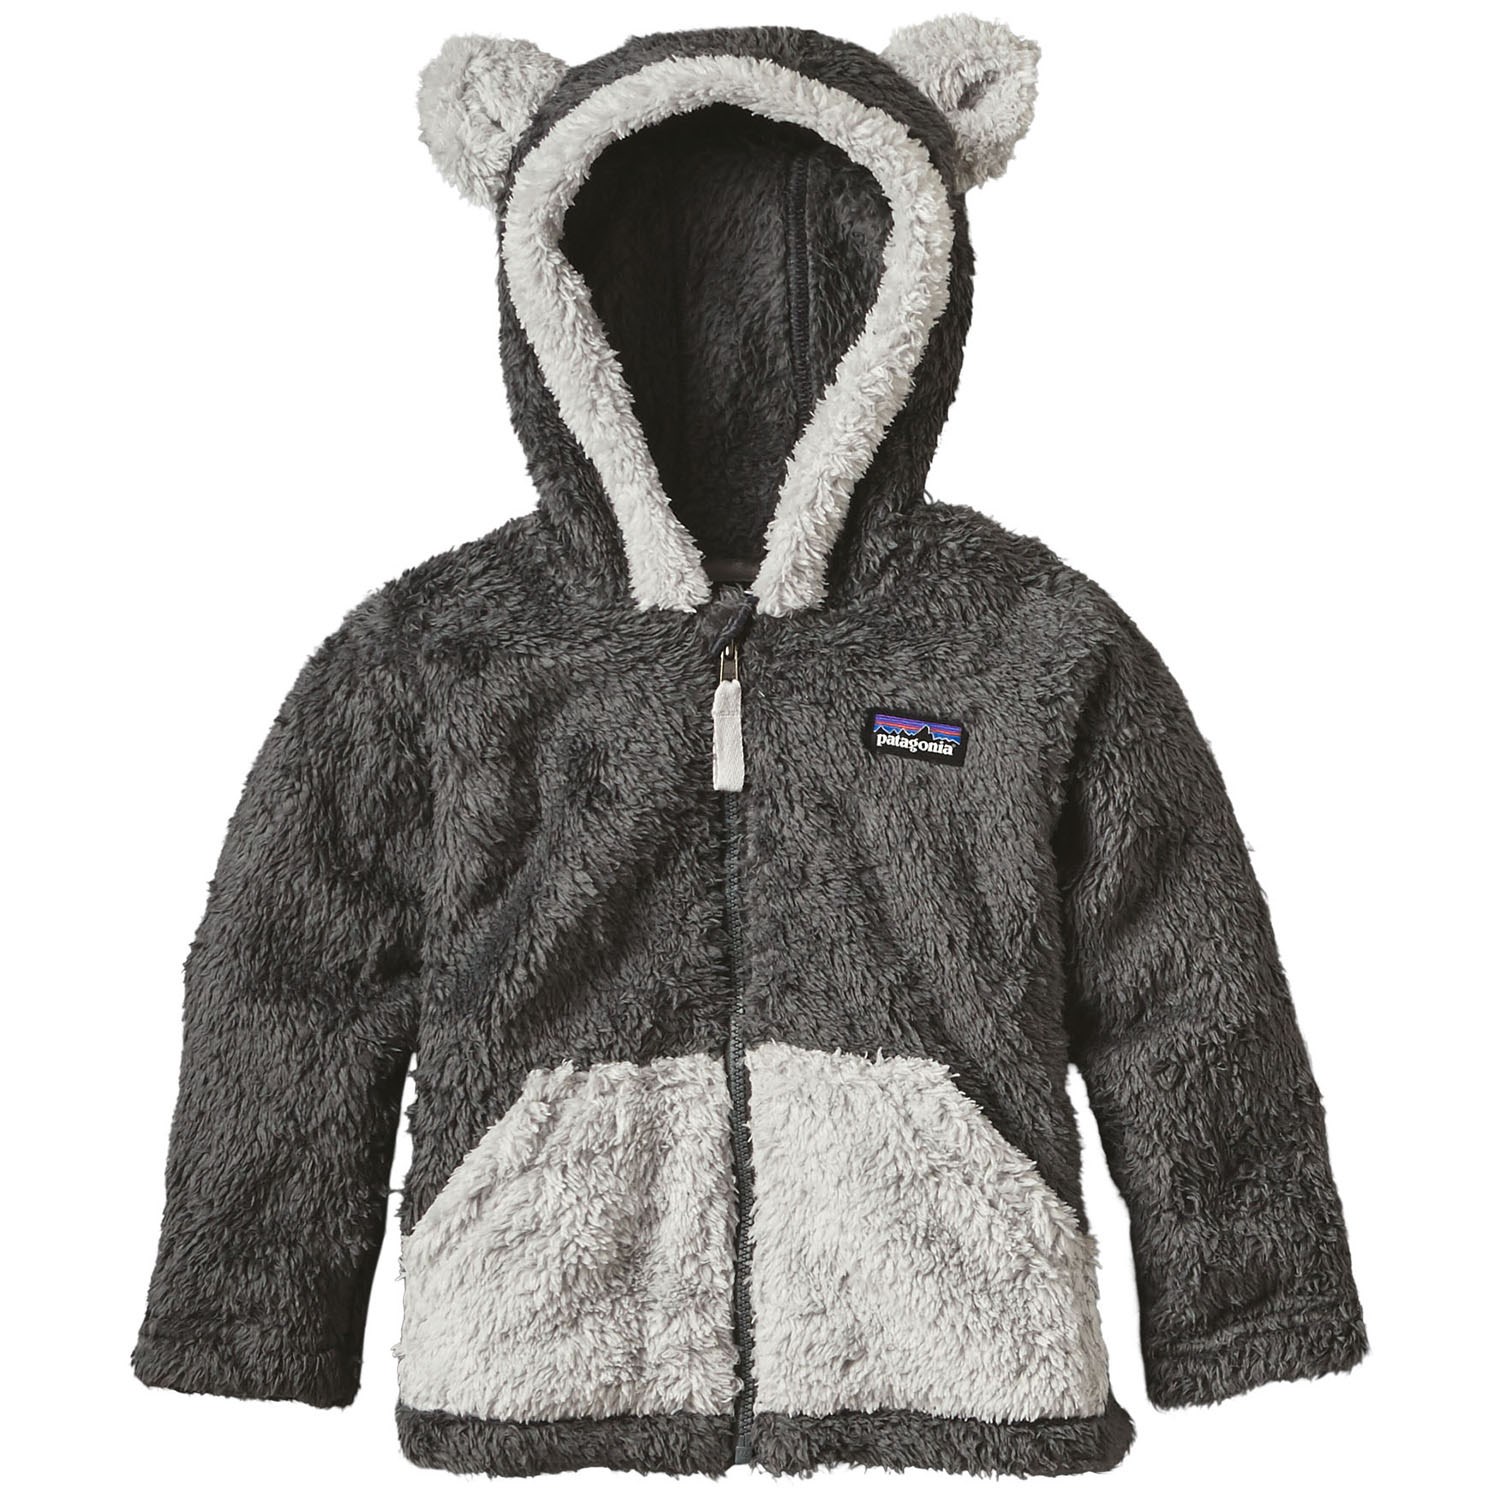 patagonia furry jacket